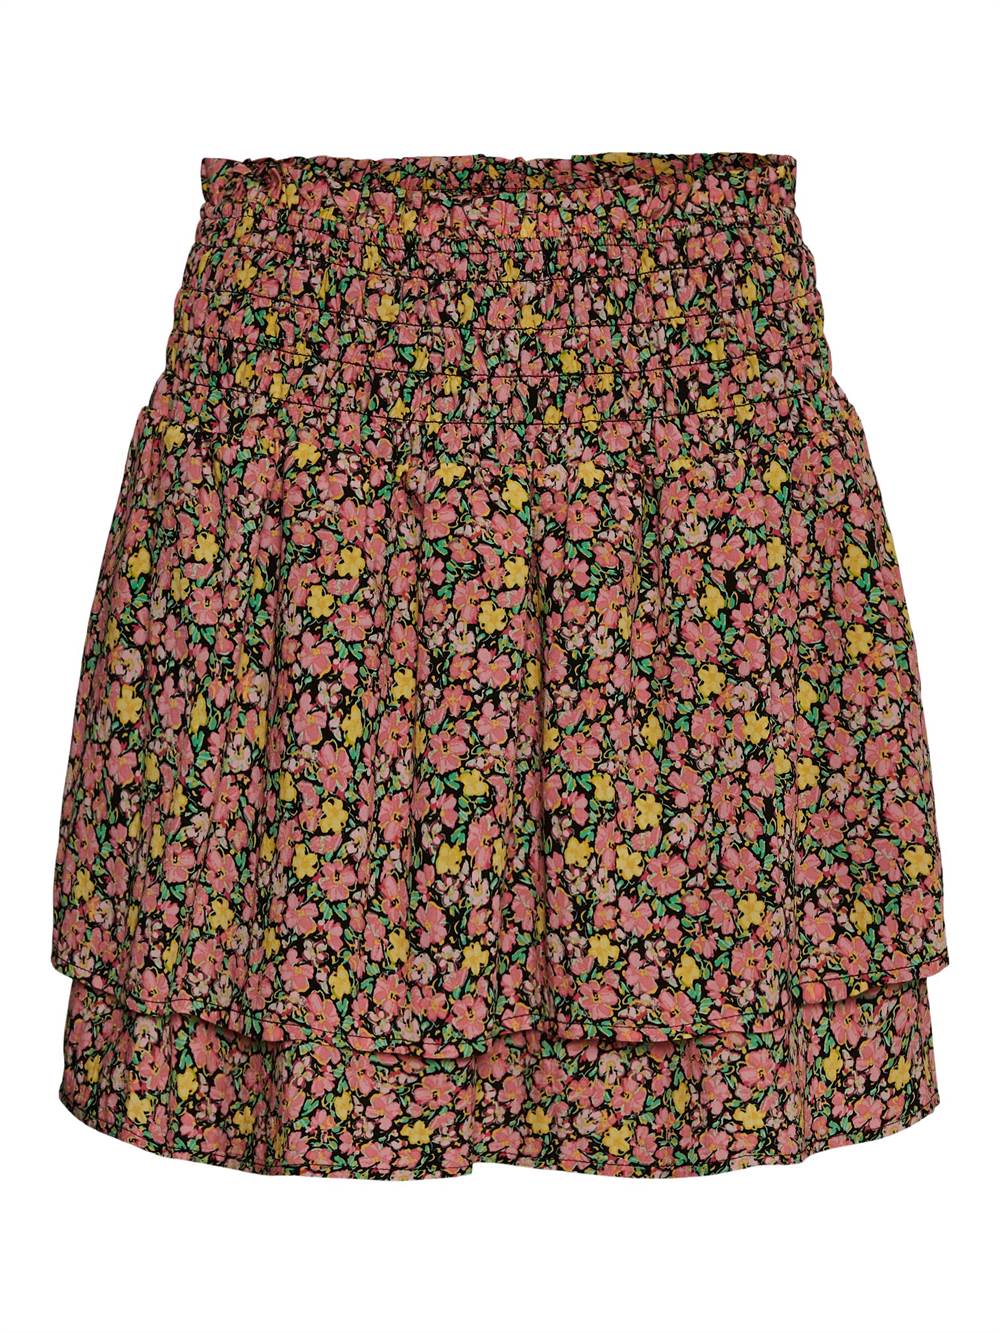 Køb Moda nederdel - sort/pink/grøn/gul